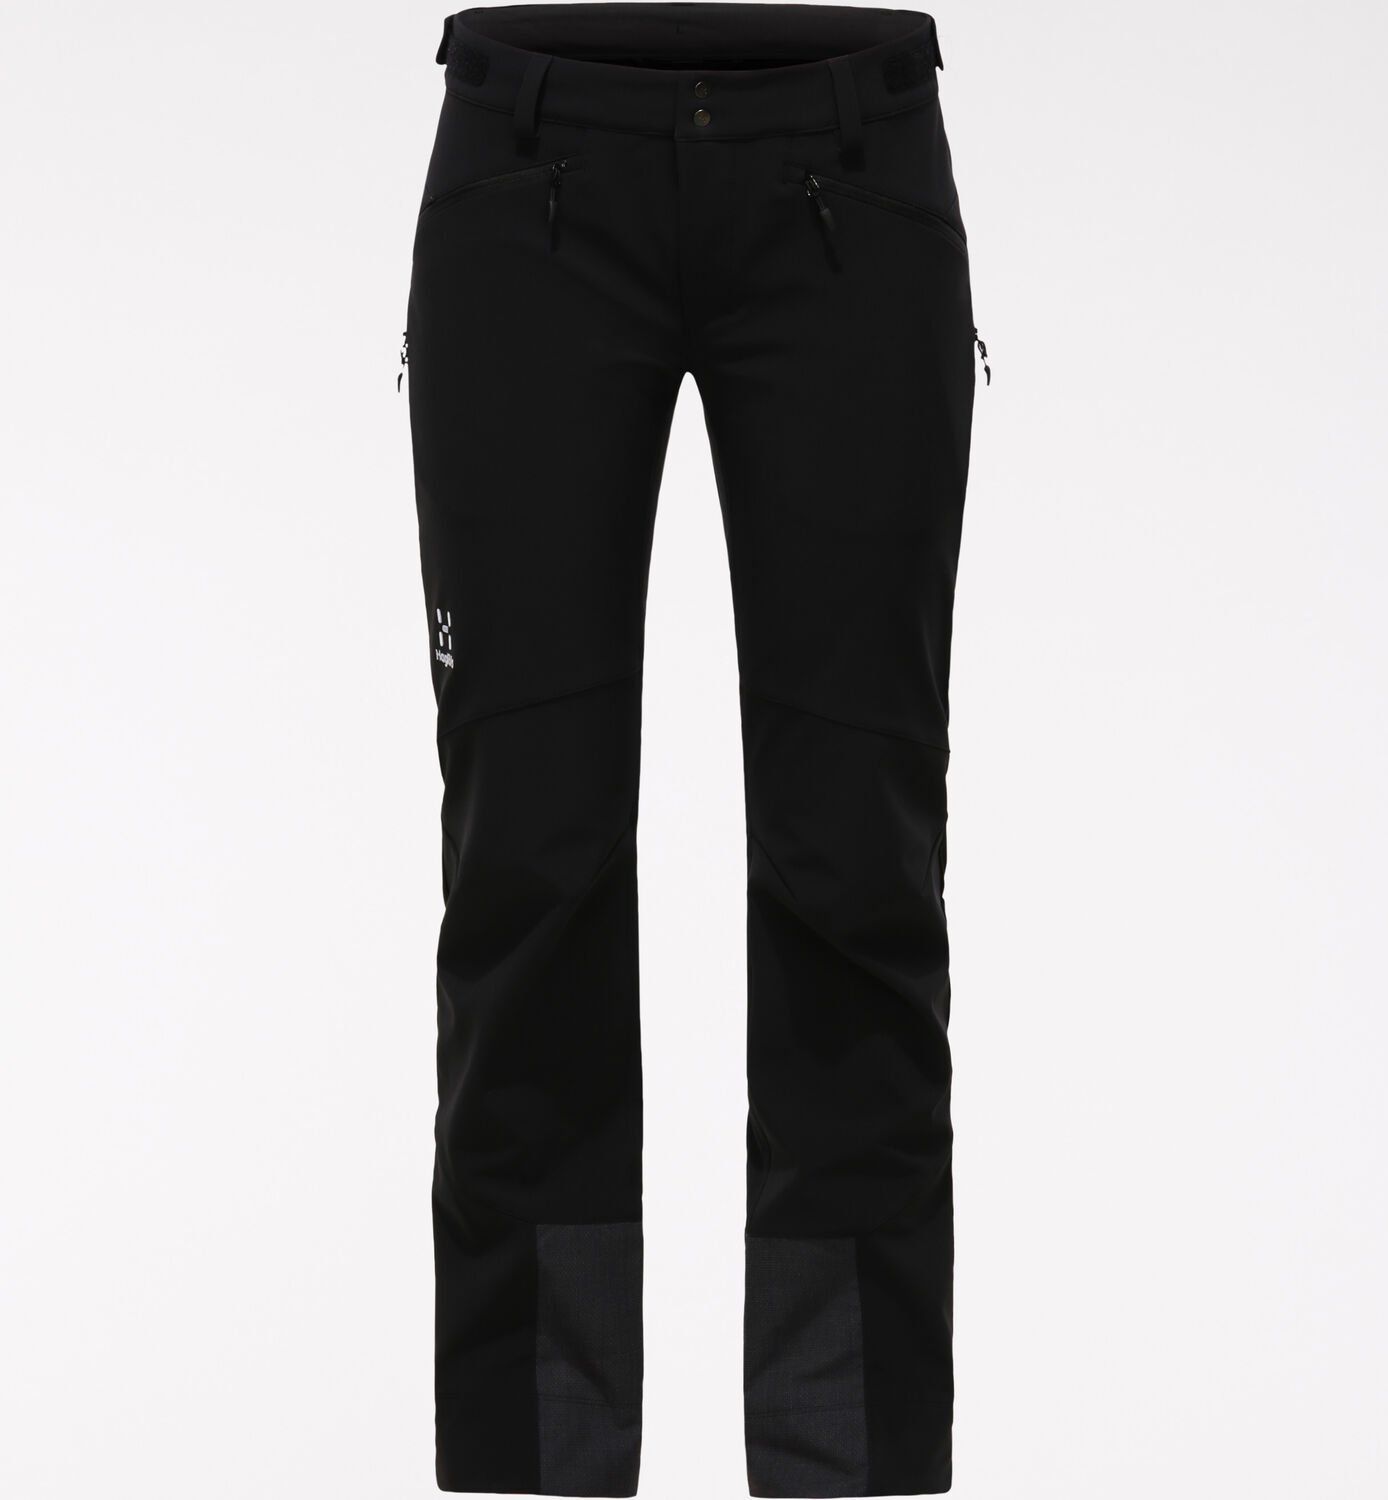 Pantalon de randonnée Rando Flex Pant - True Black